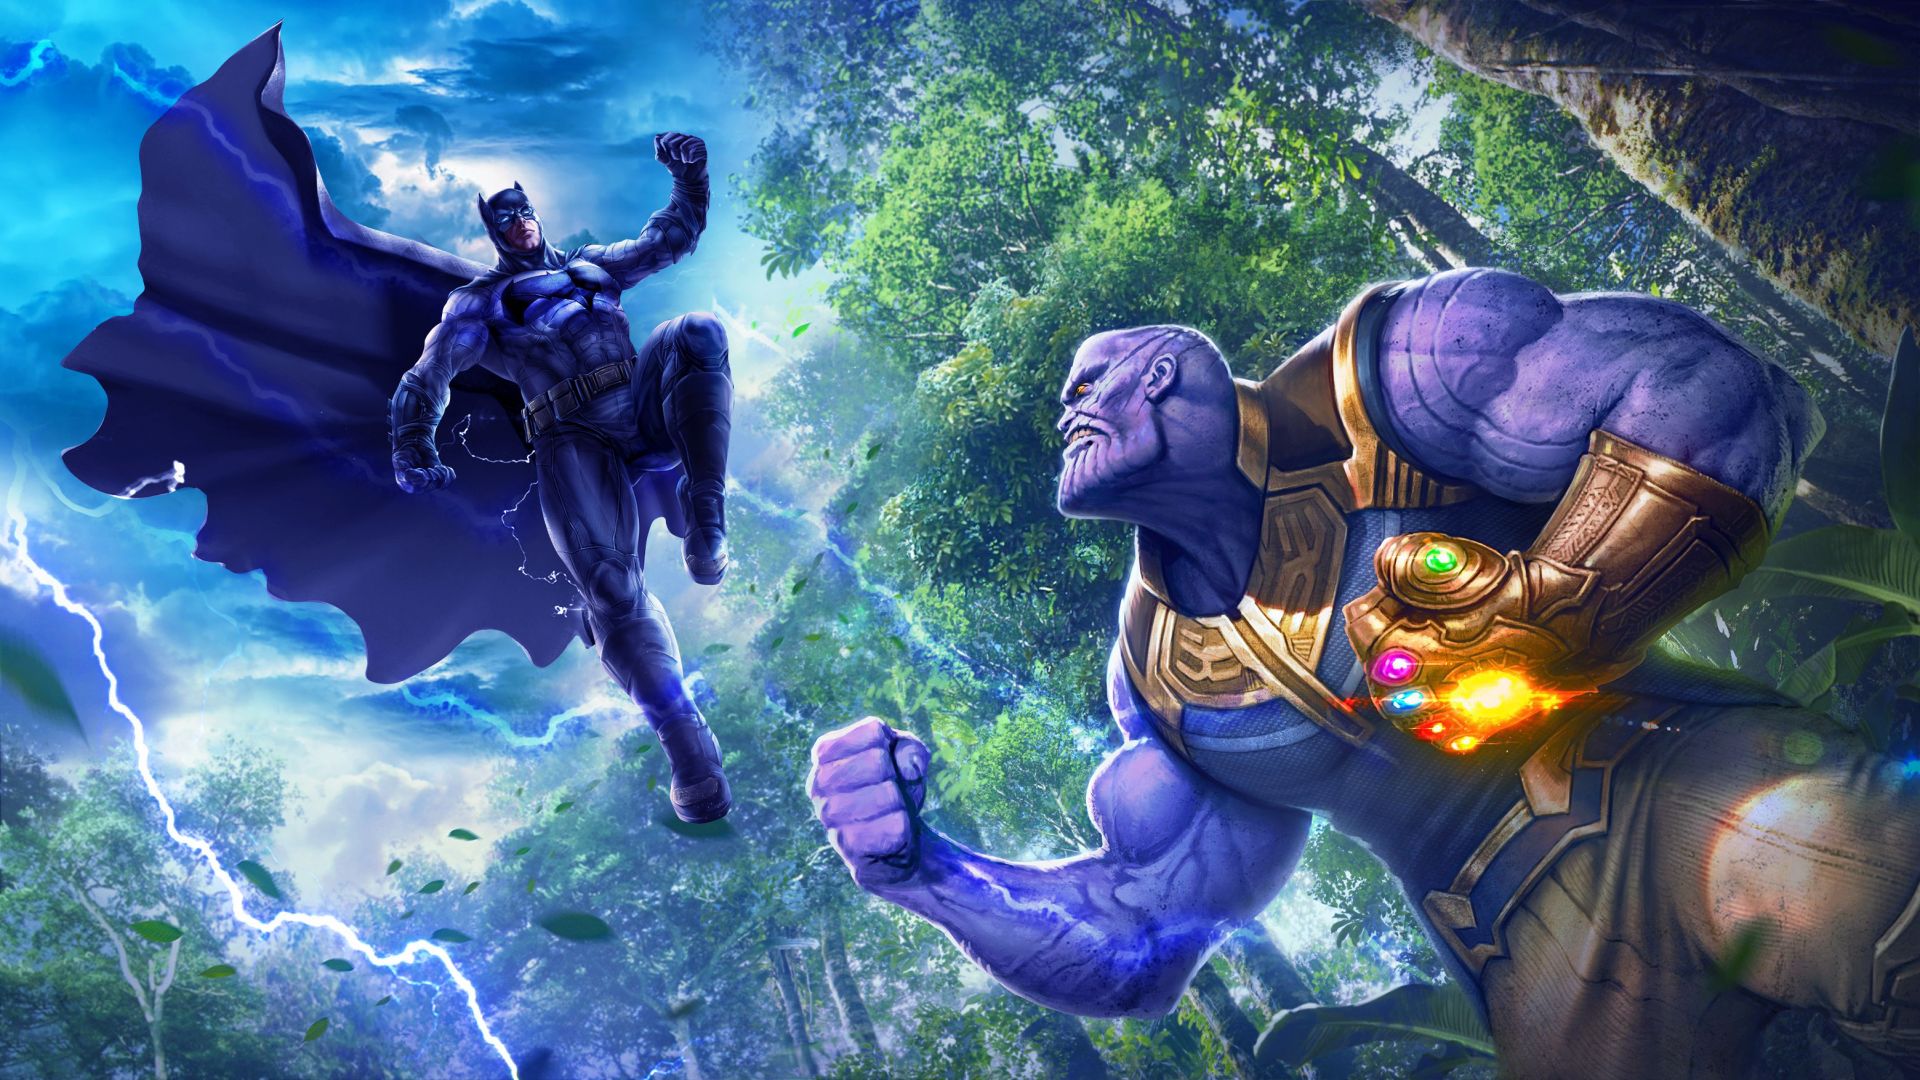 Wallpaper Batman vs Thanos, crossover, fan art